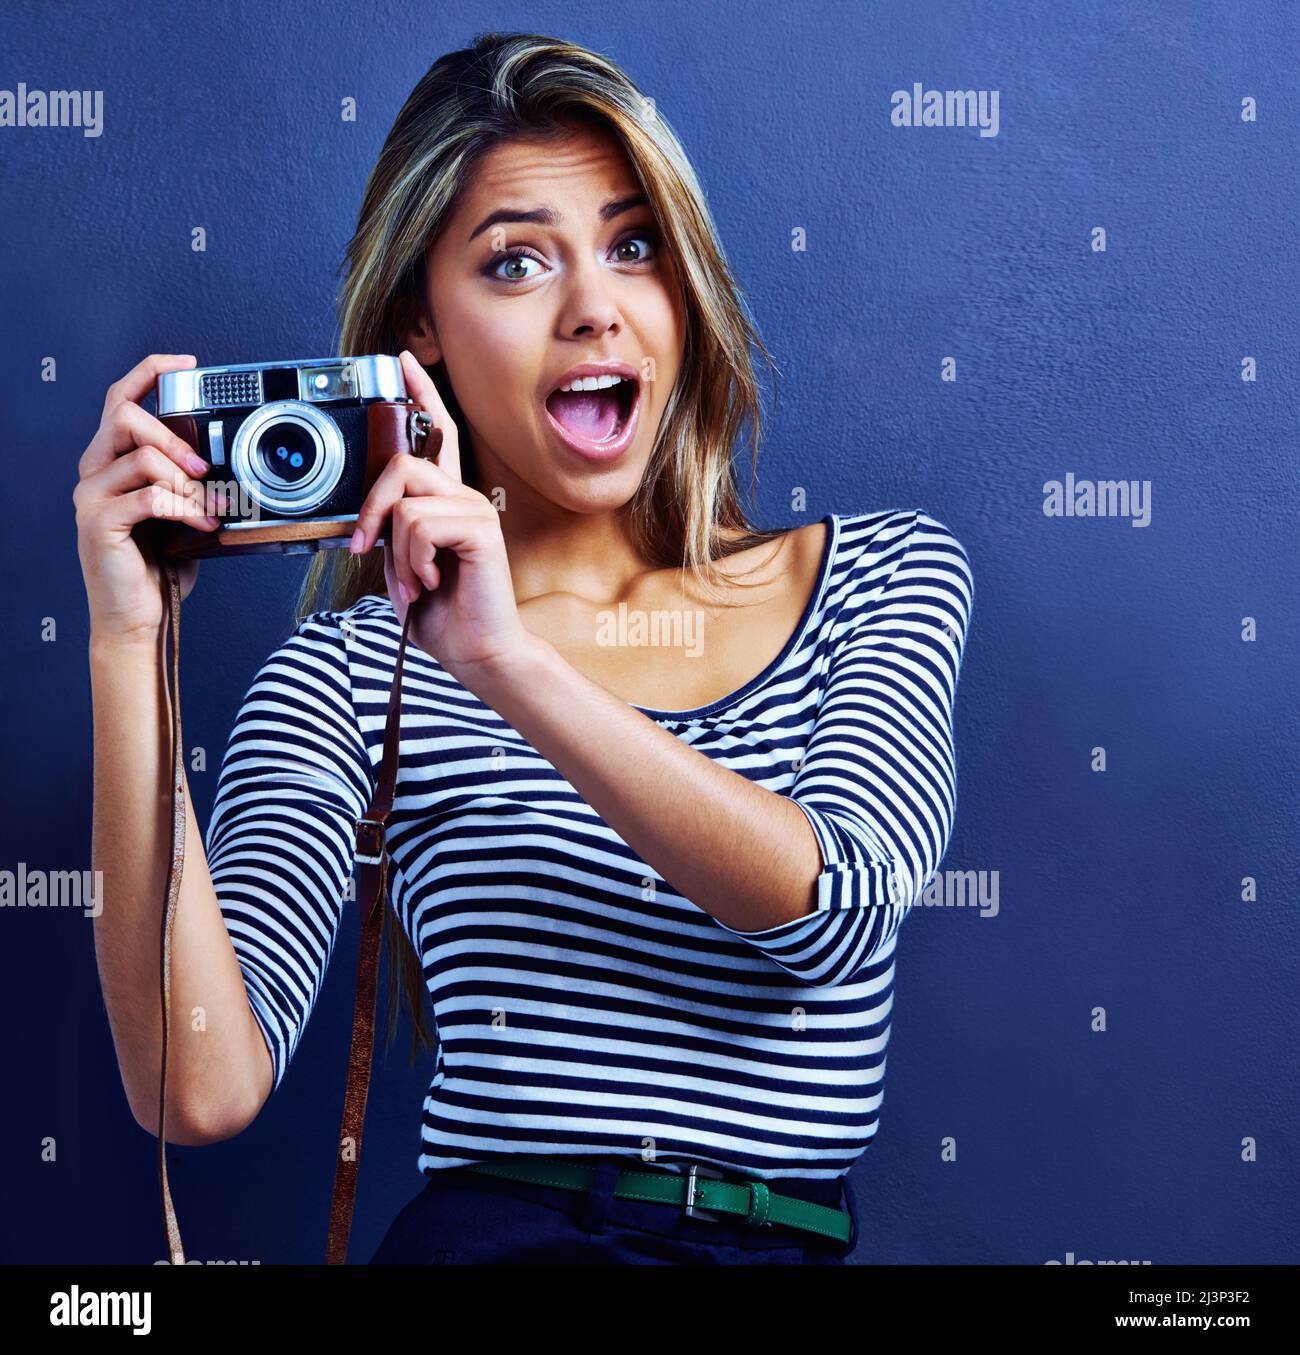 Halte die Pose. Aufnahme einer überraschten jungen Frau mit einer Kamera. Stockfoto